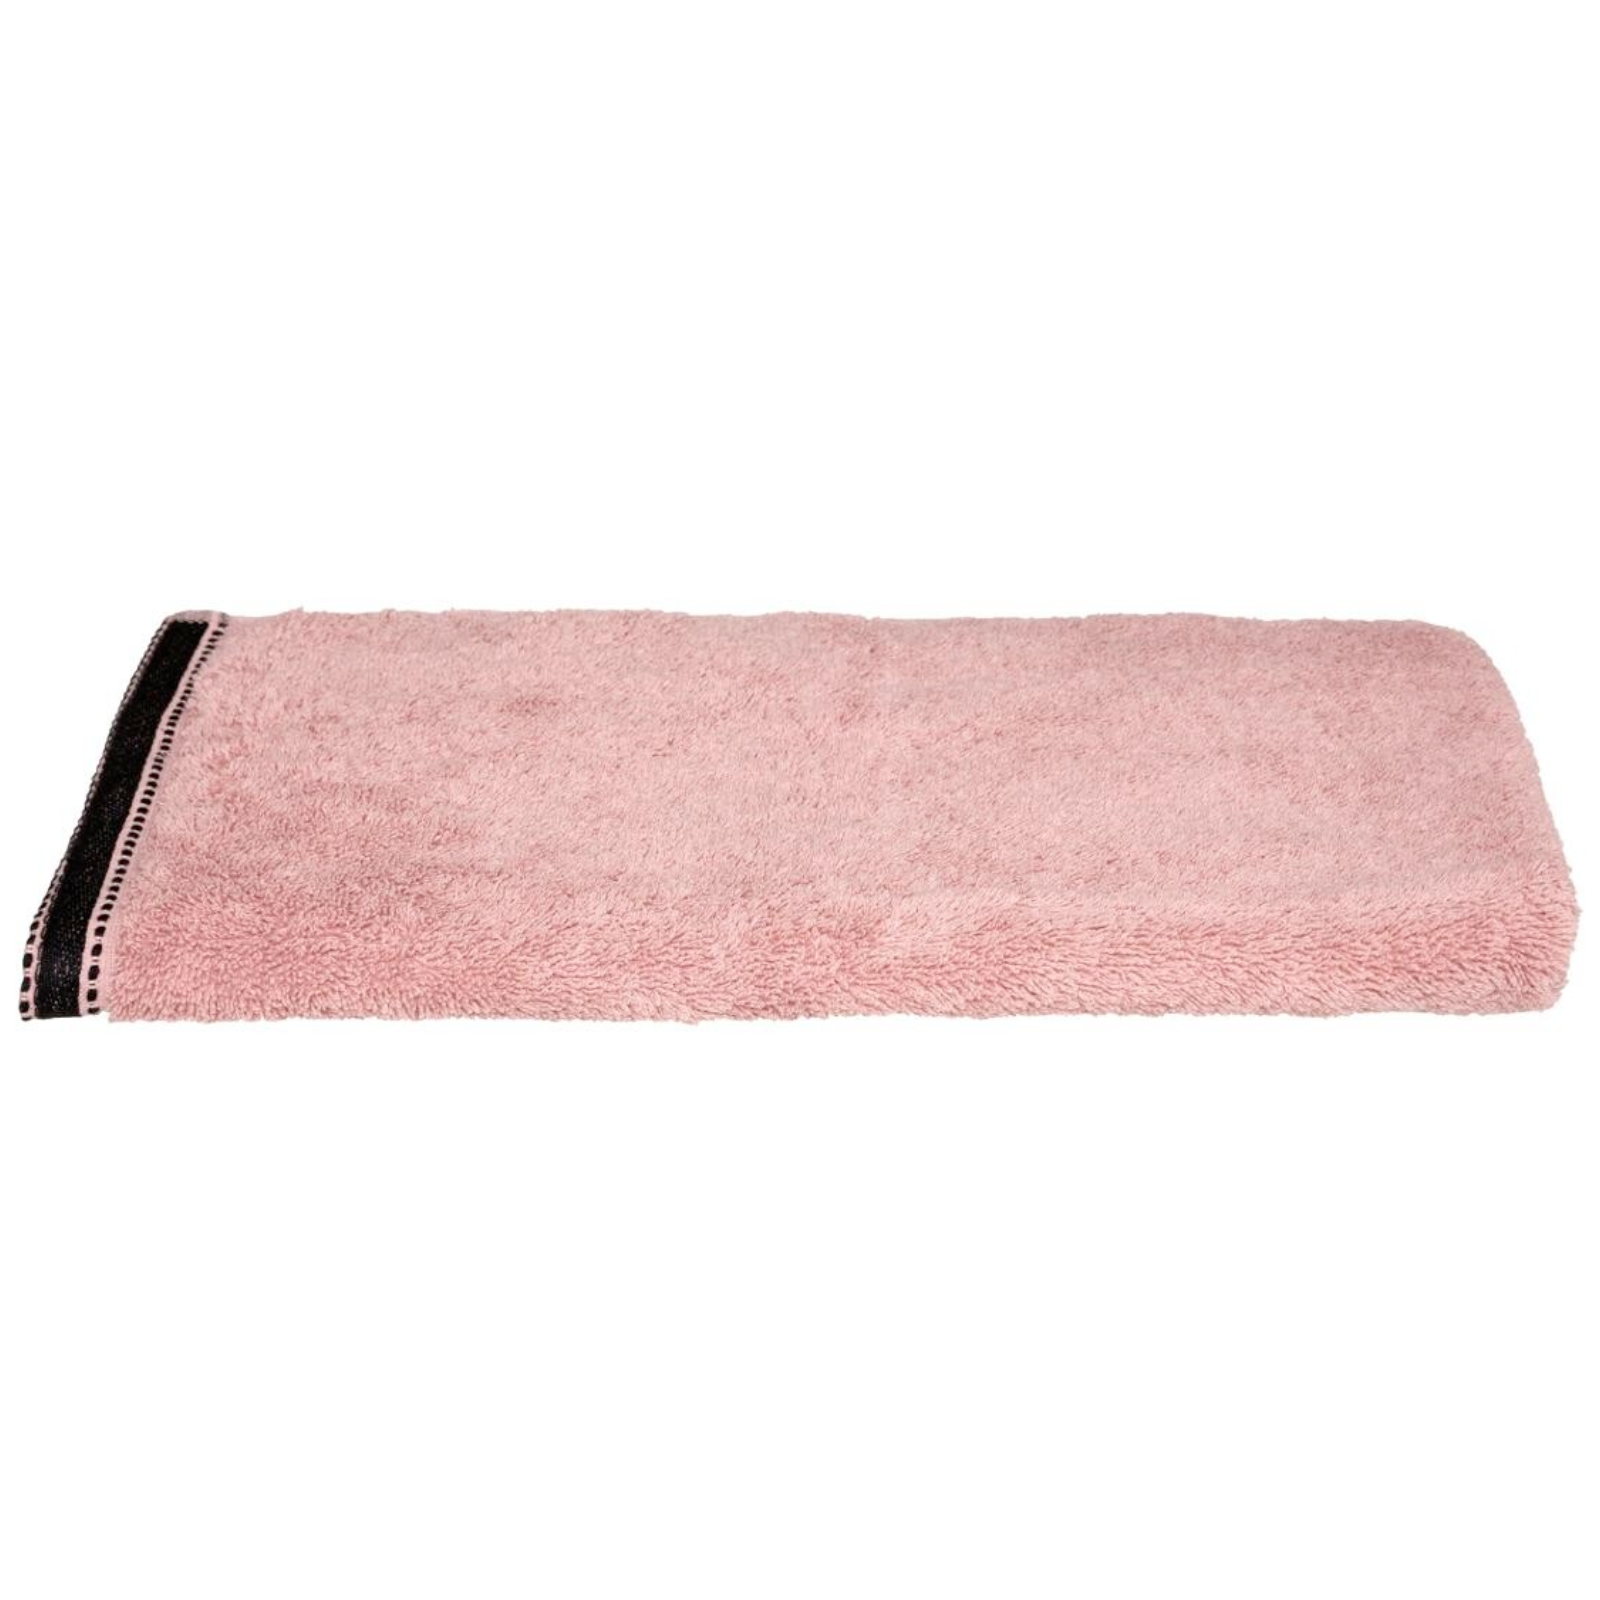 Asciugamano da palestra o bagno rettangolare in cotone e poliestere rosa 